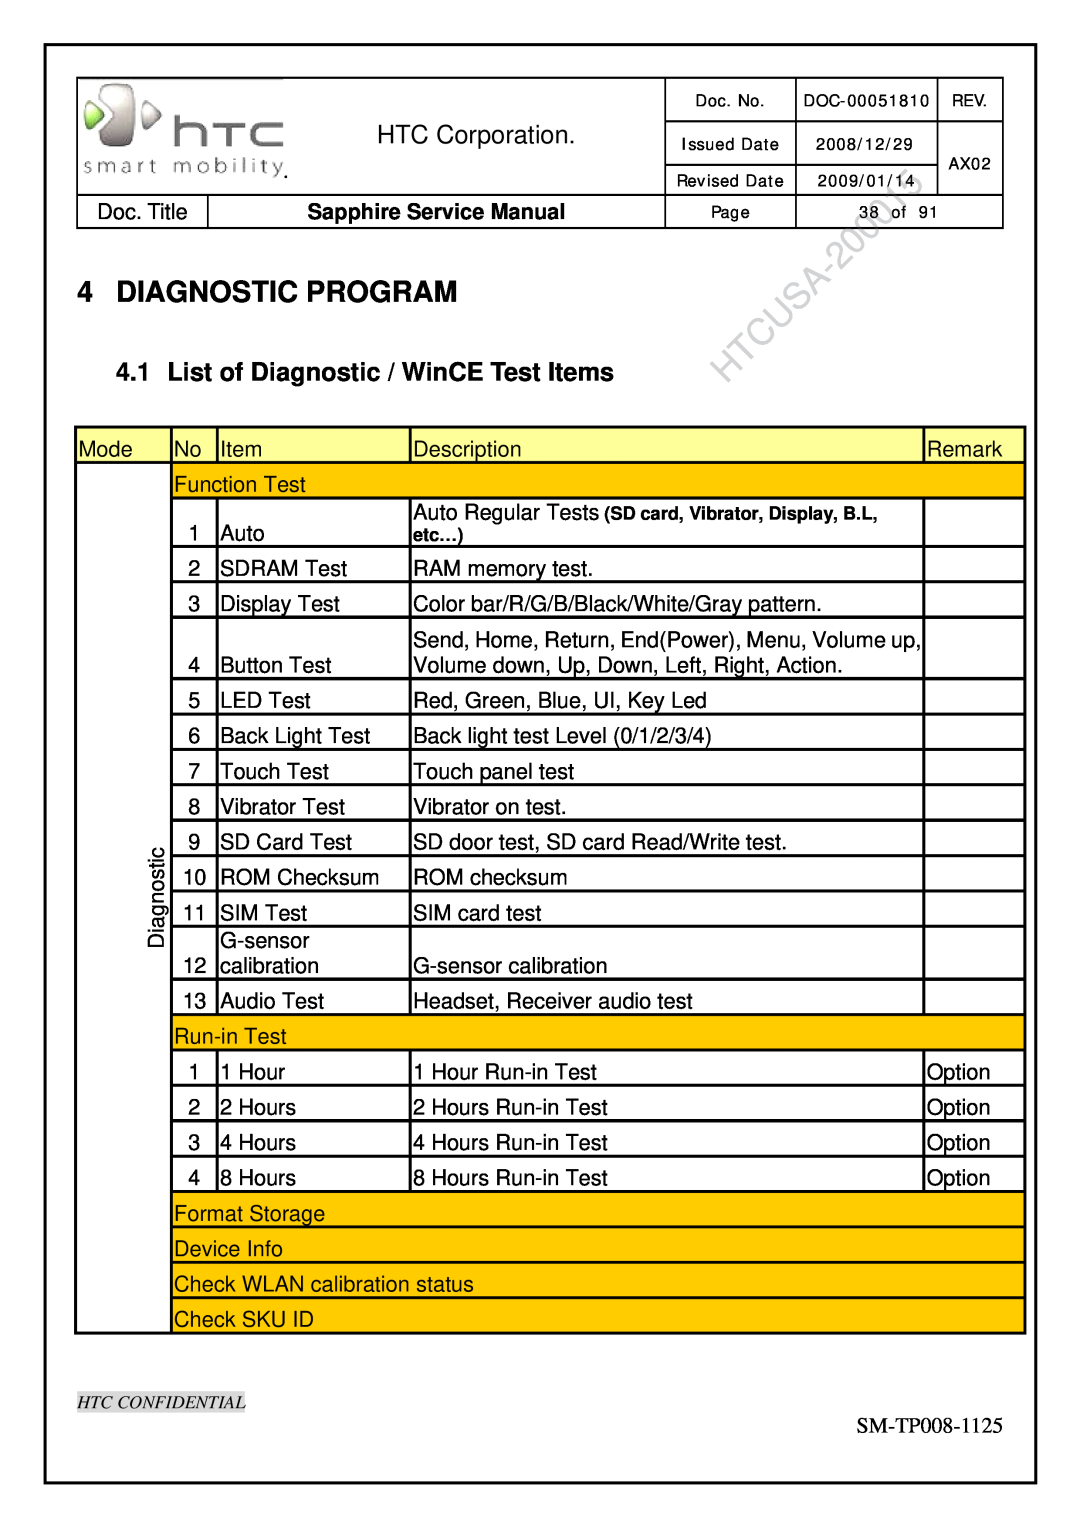 HTC SM-TP008-1125 Diagnostic Program, List of Diagnostic / WinCE Test Items, HTC Corporation, Sapphire Service Manual 